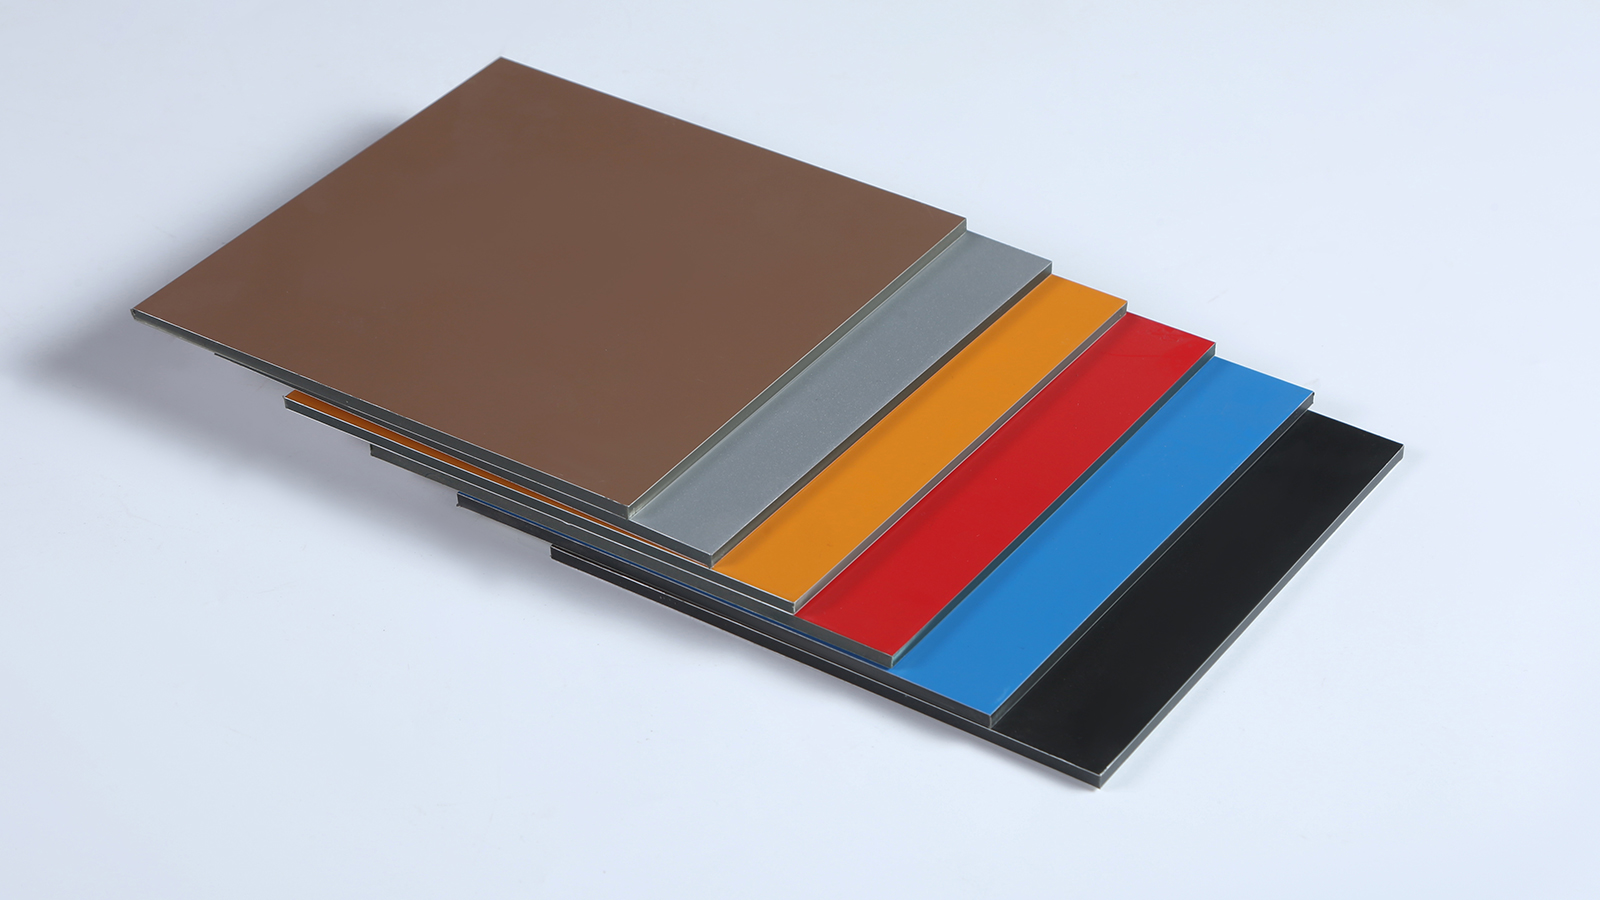 铝塑板抗压性强，比纯铝轻、易加工、可塑性好、耐腐蚀、耐高温等性能都很优异。